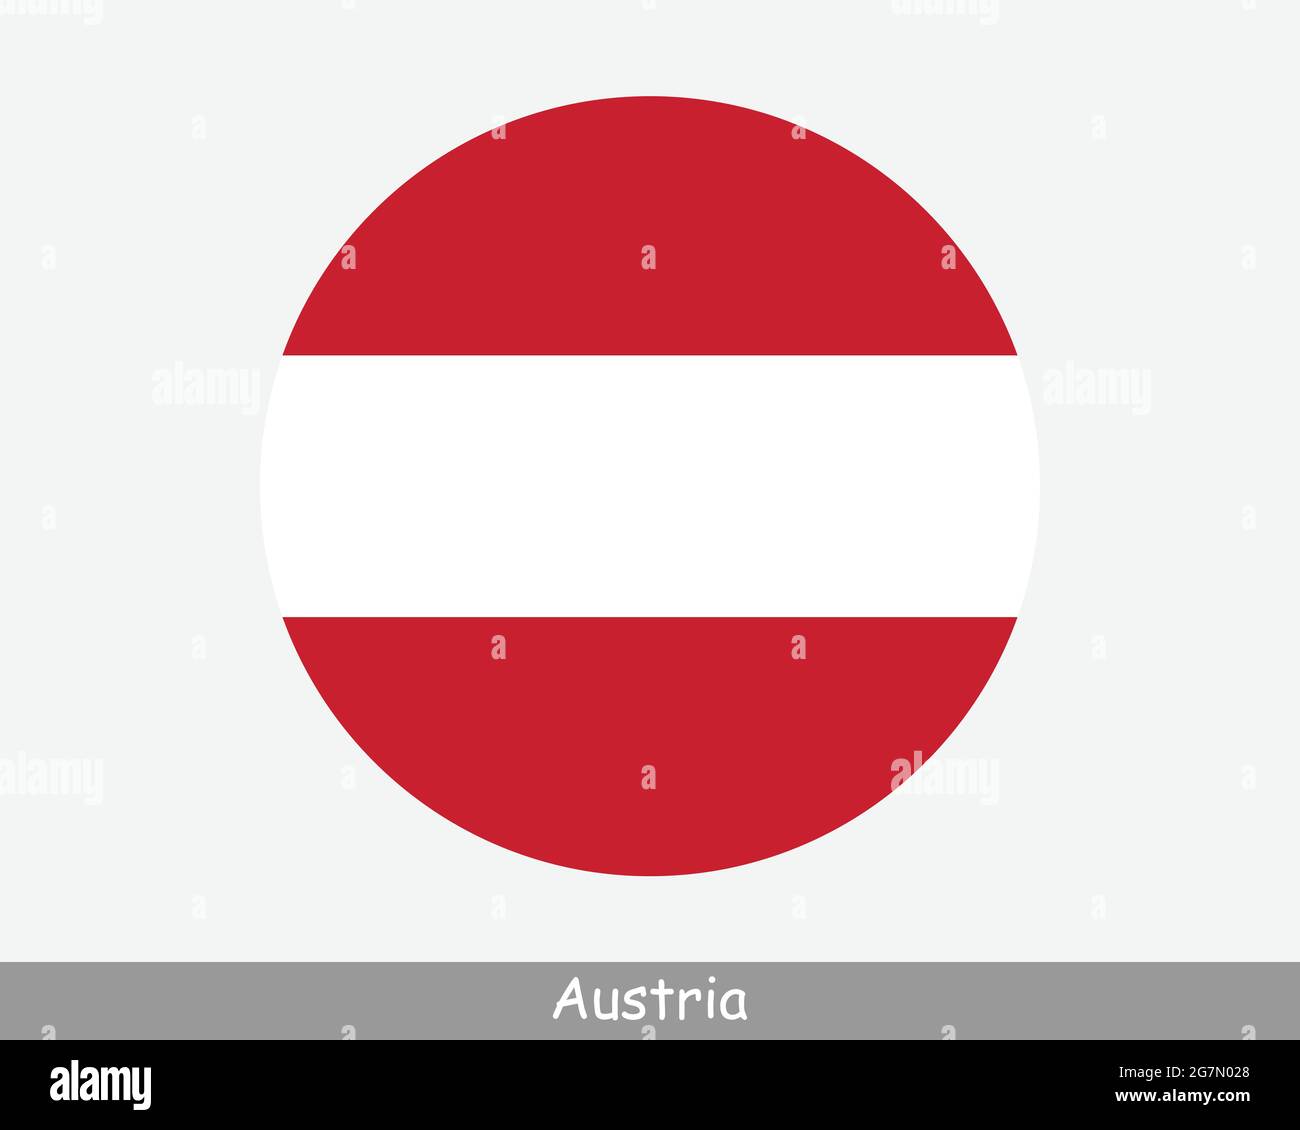 Austria Round Circle Flag. Austrian Circular Button Banner Icon. EPS Vector  Stock Vector Image & Art - Alamy